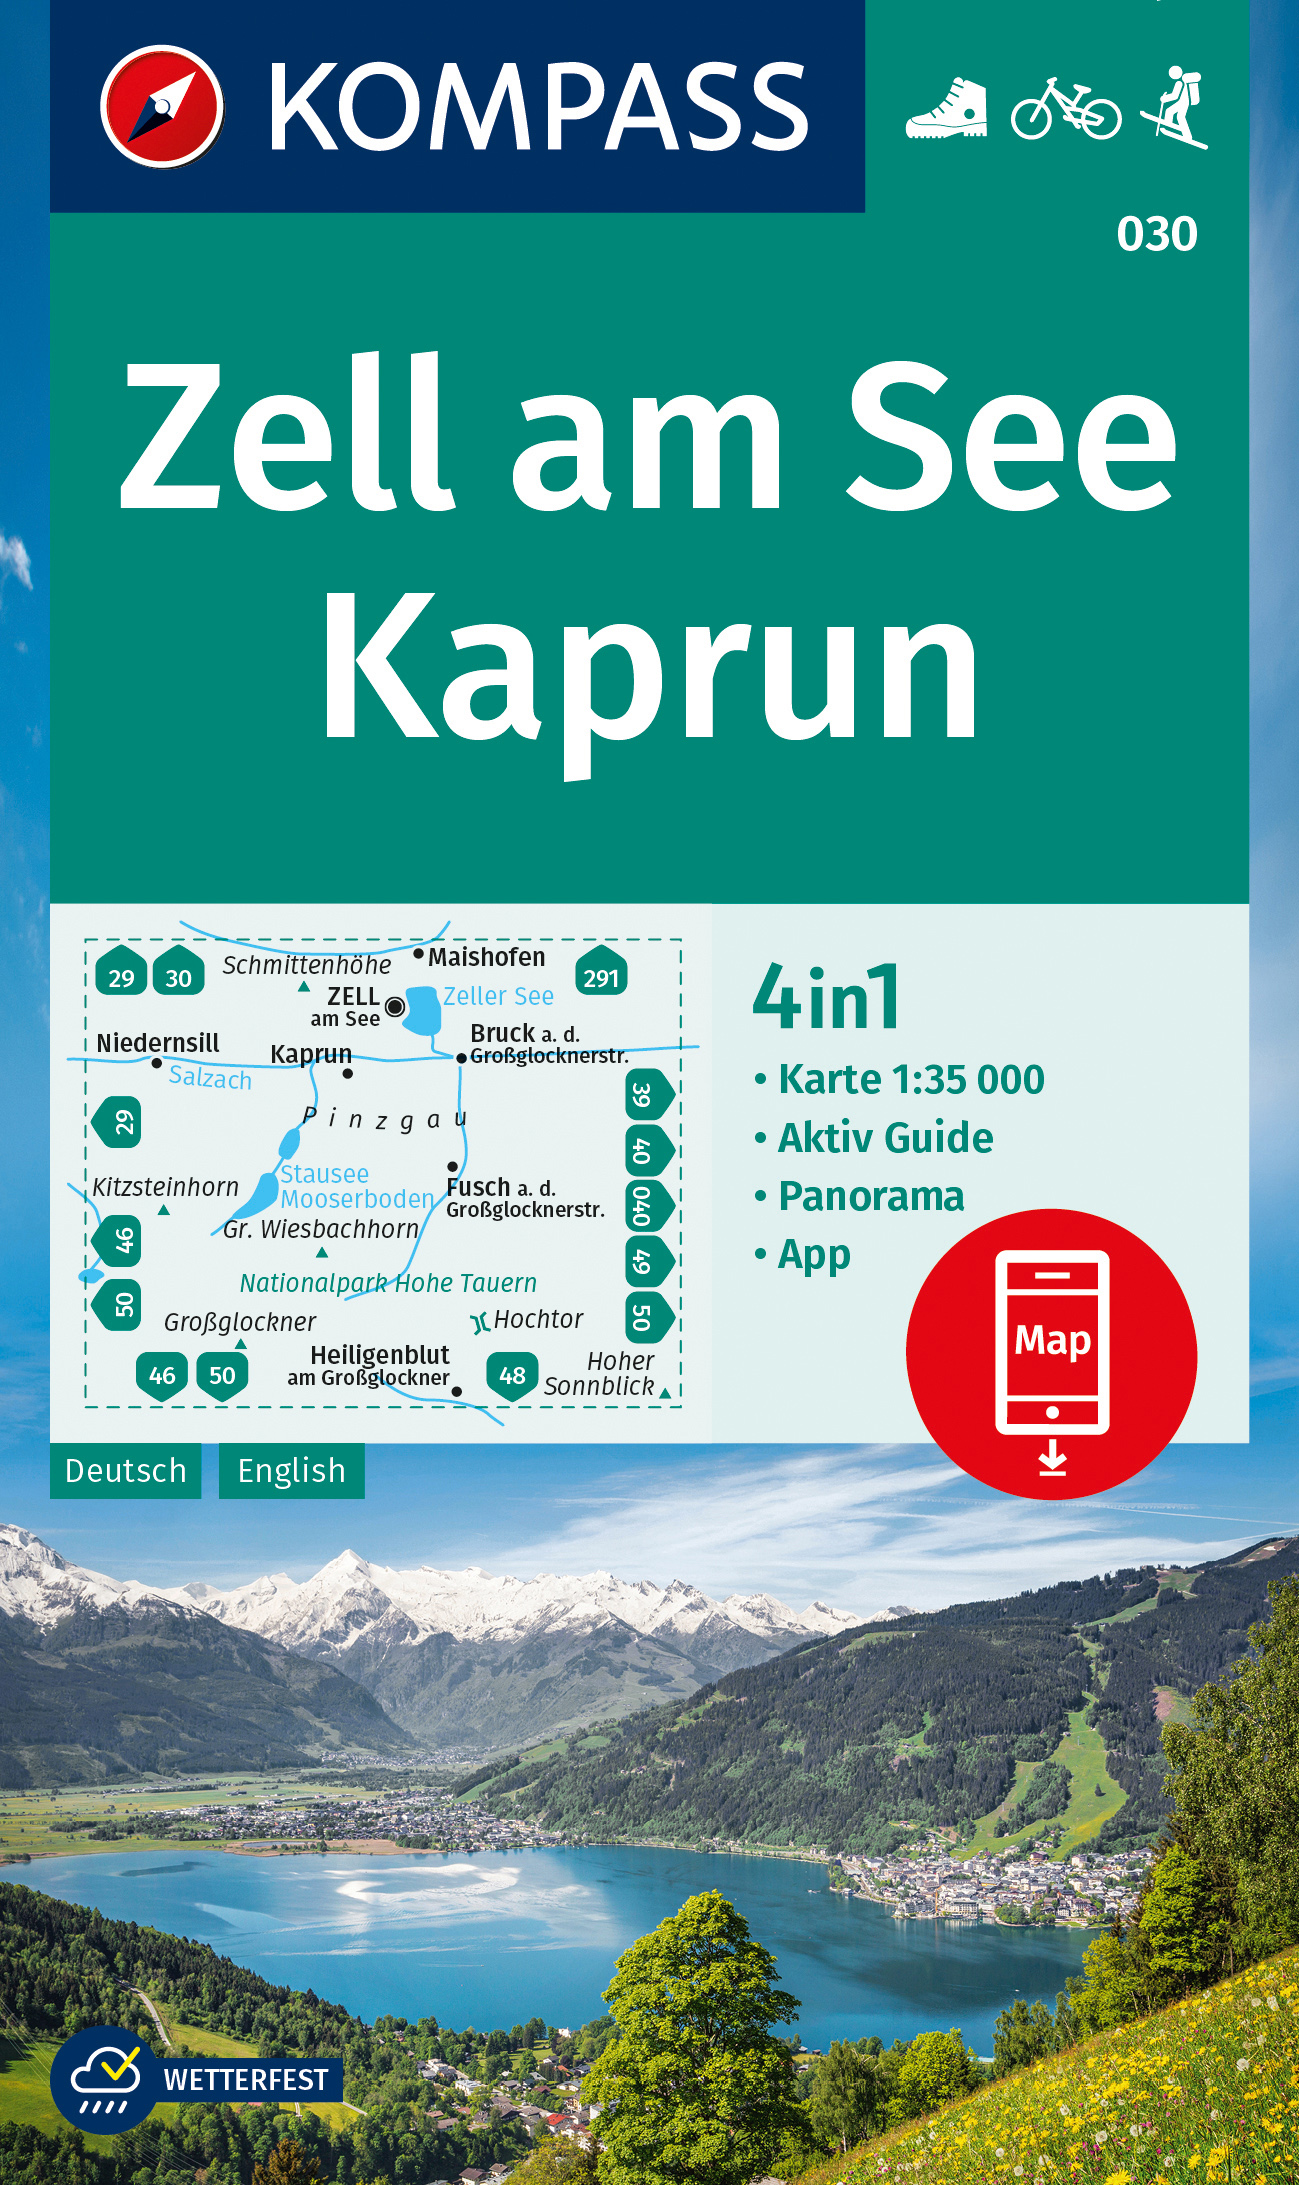 Zell am See, Kaprun (Kompass - 030) - turistická mapa